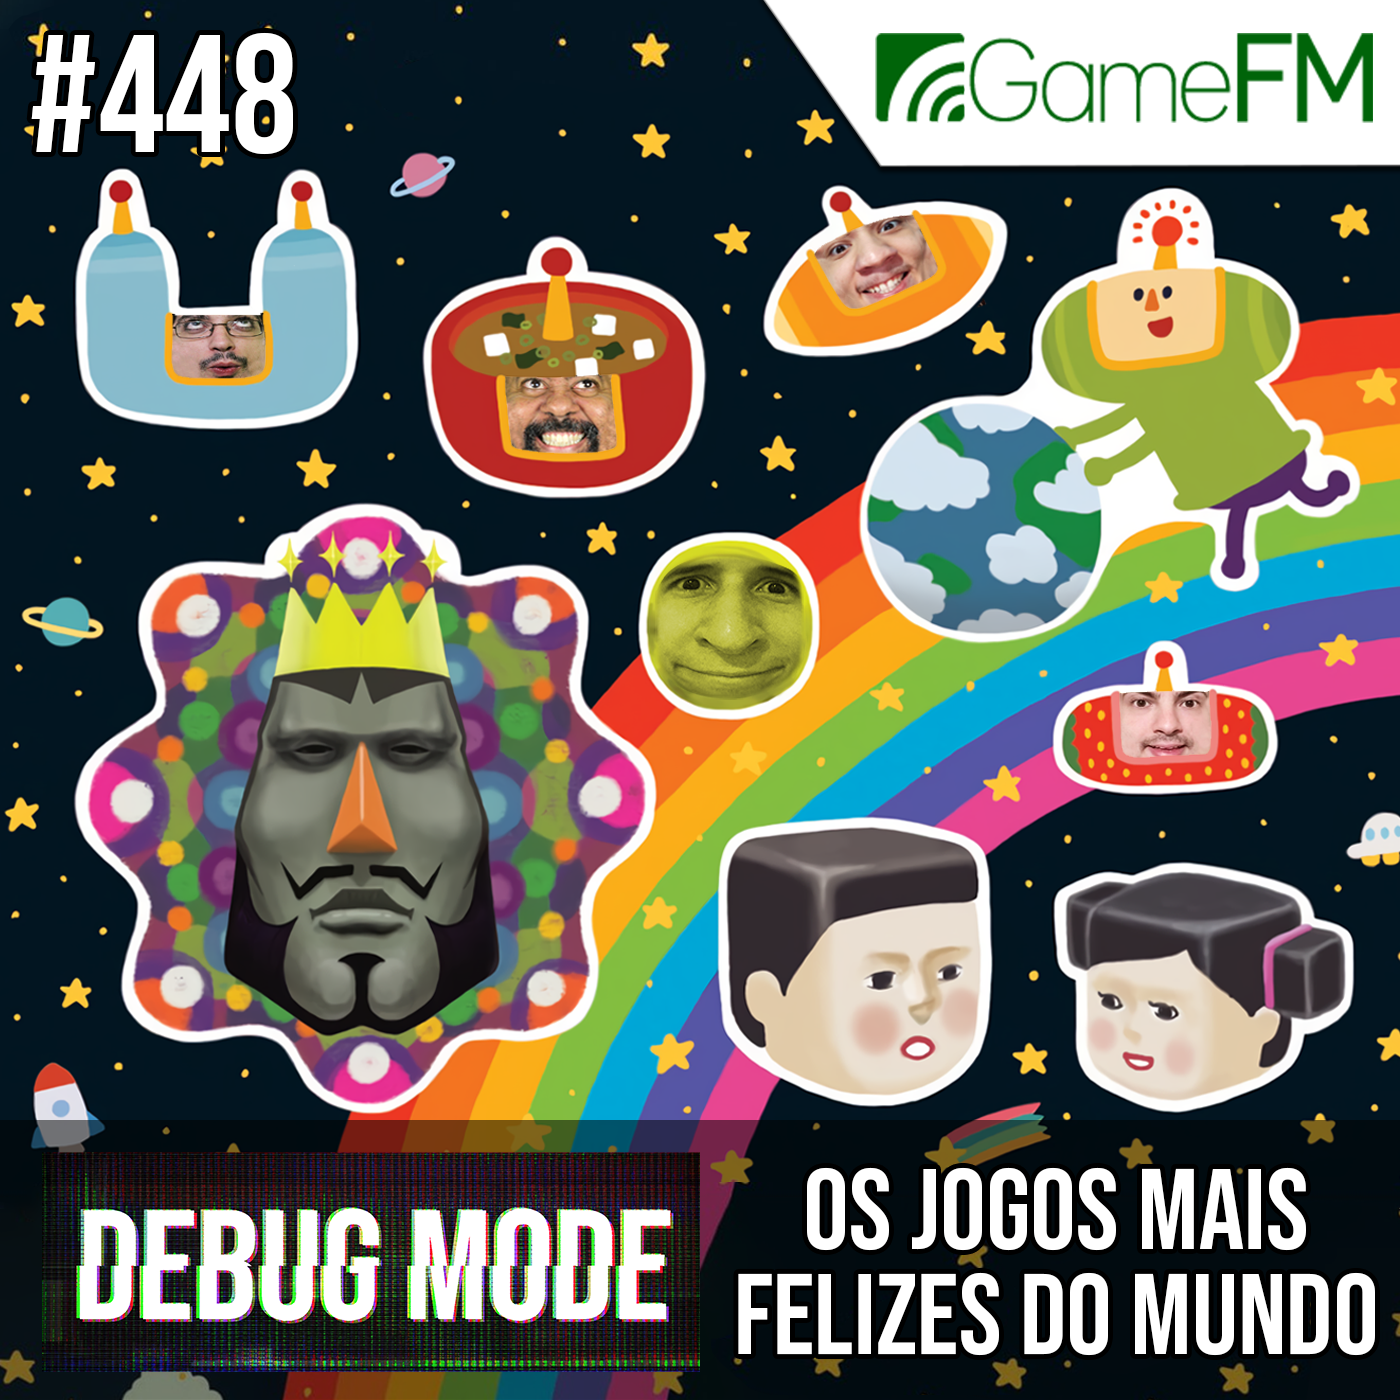 Debug Mode #448: Os jogos mais felizes do mundo - Podcast